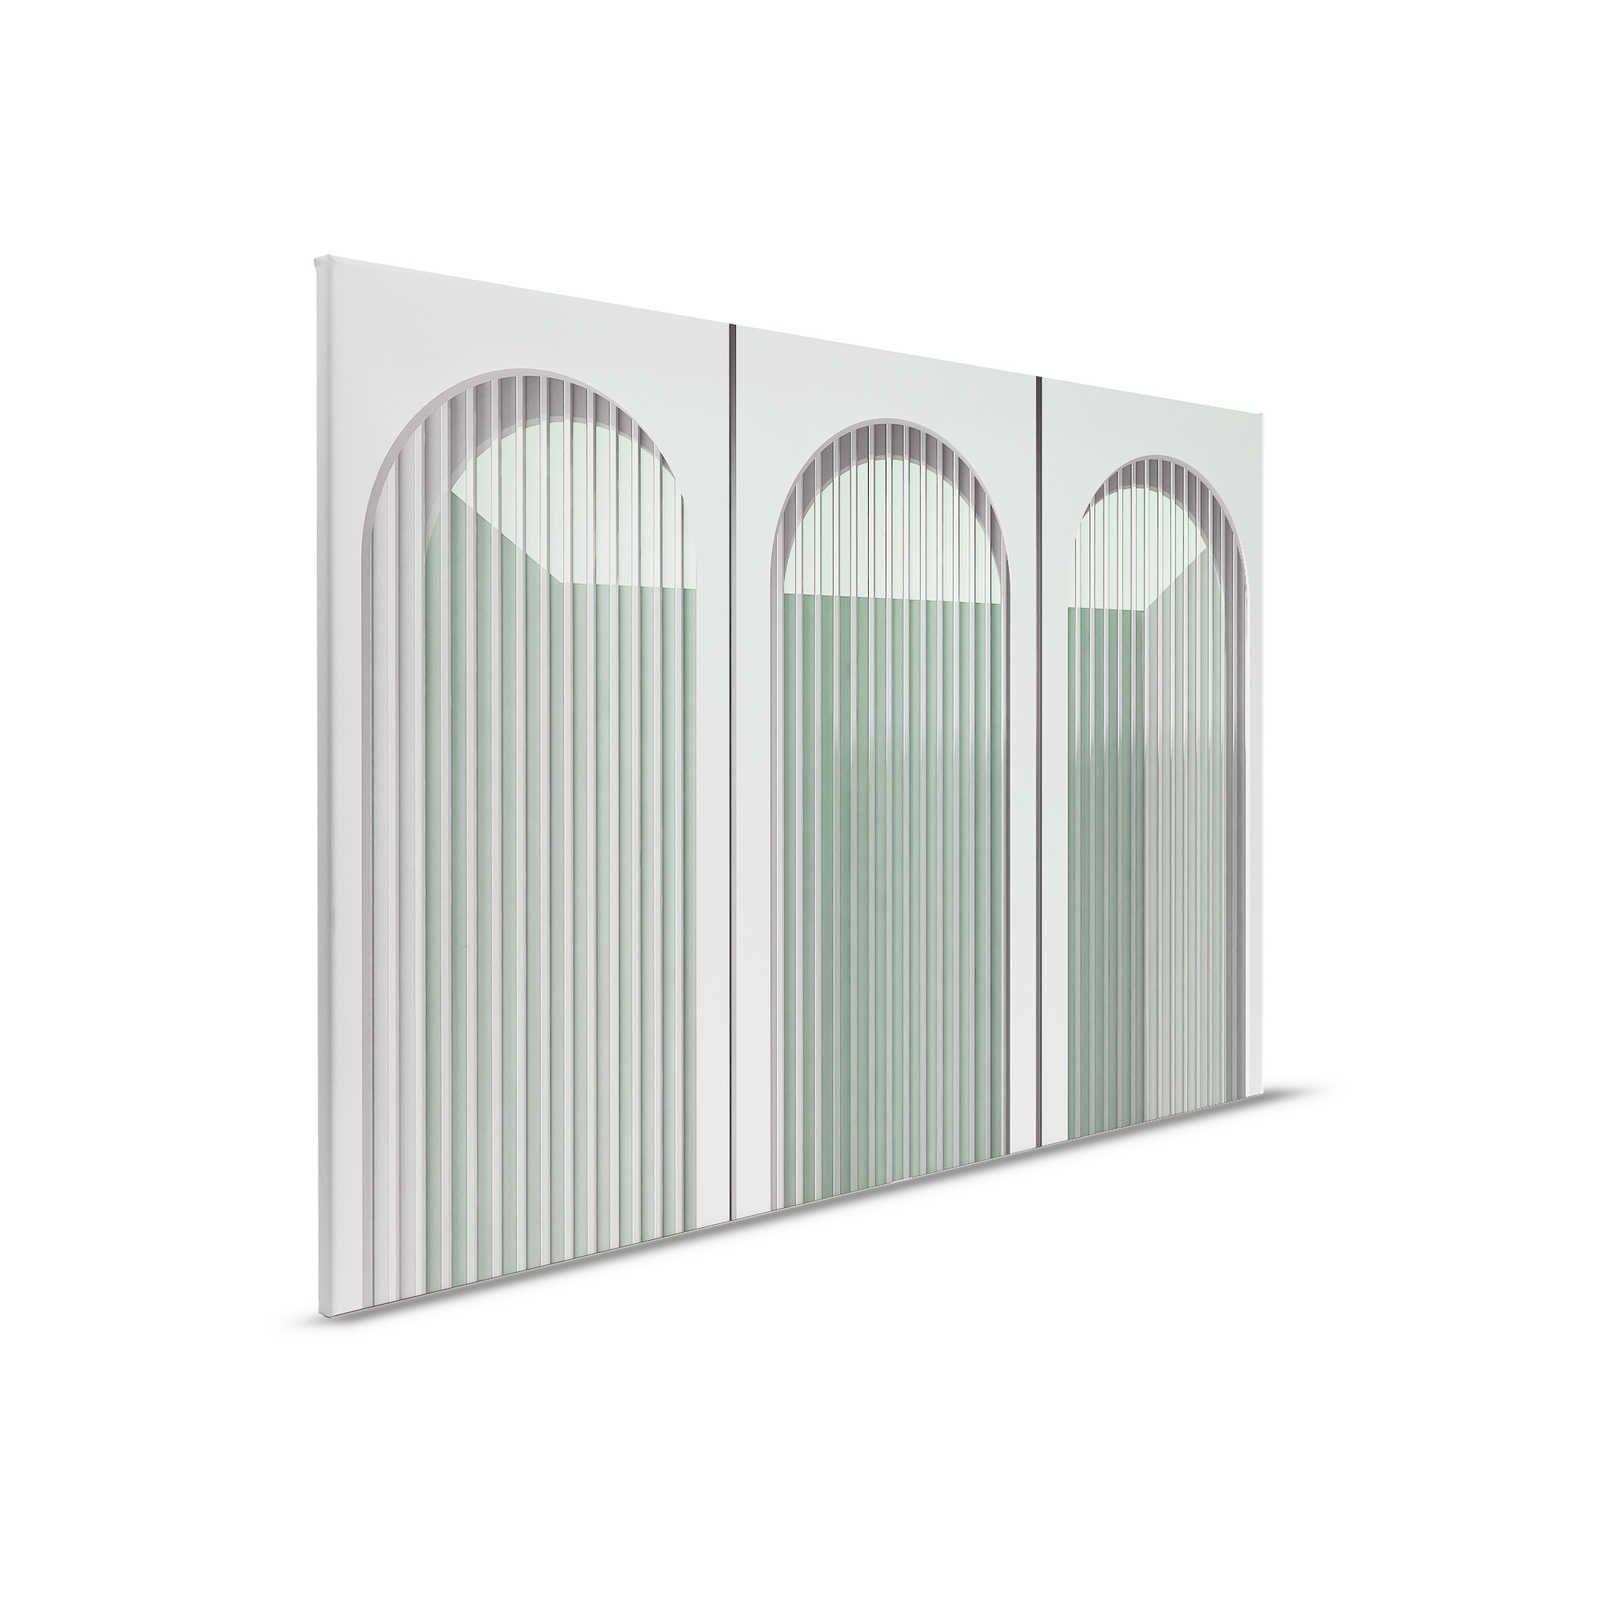         Escape Room 3 - Architektur Leinwandbild moderne Aussichten Grau & Grün – 0,90 m x 0,60 m
    